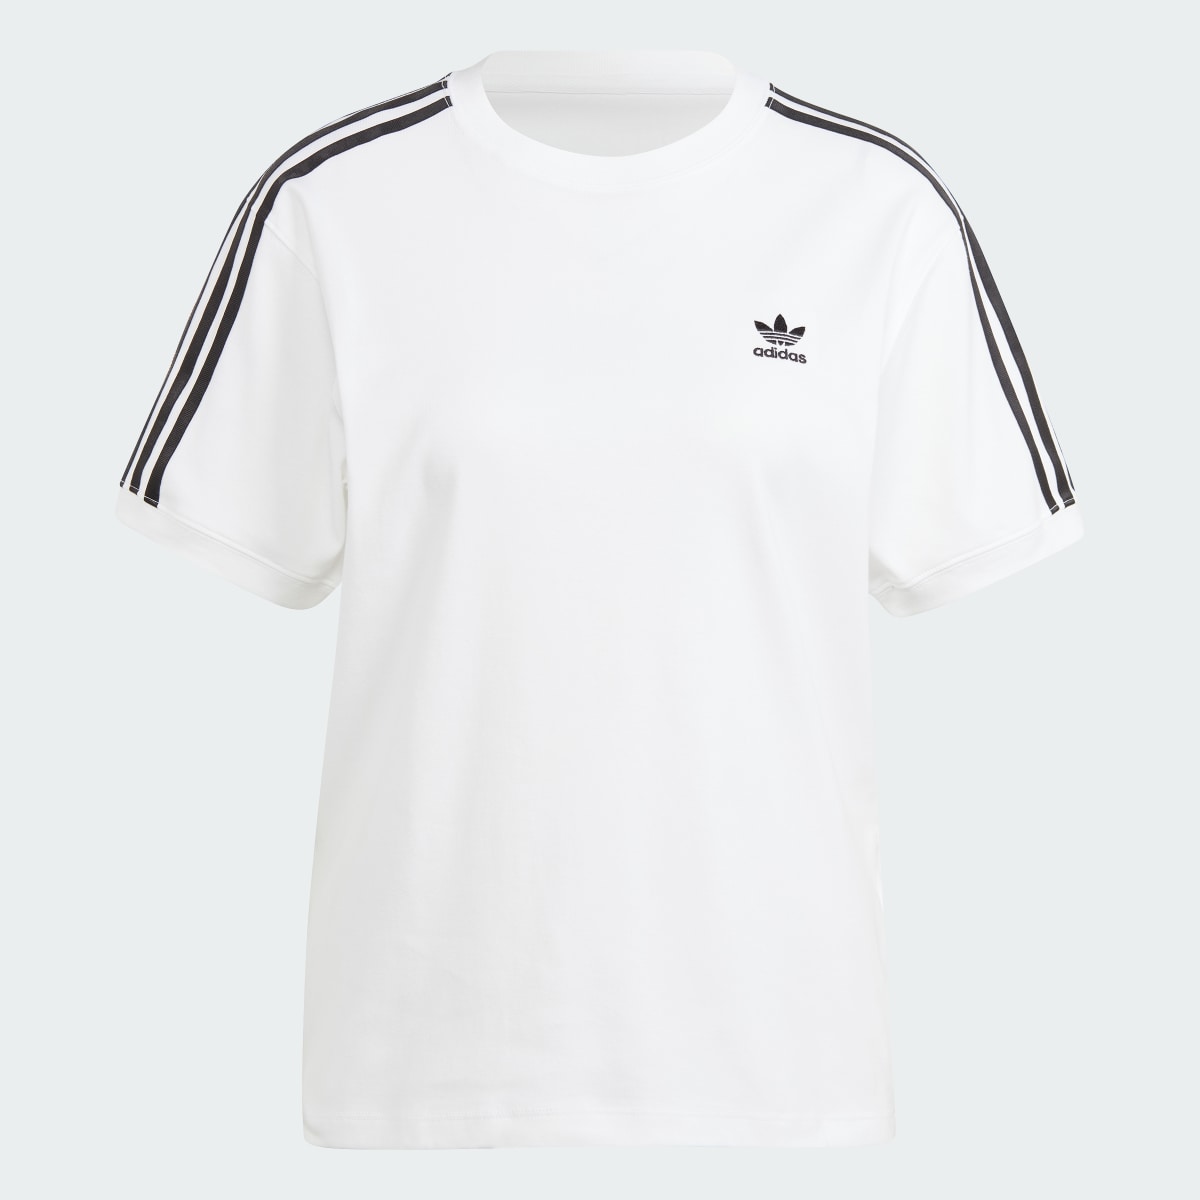 Adidas T-shirt 3 bandes. 5